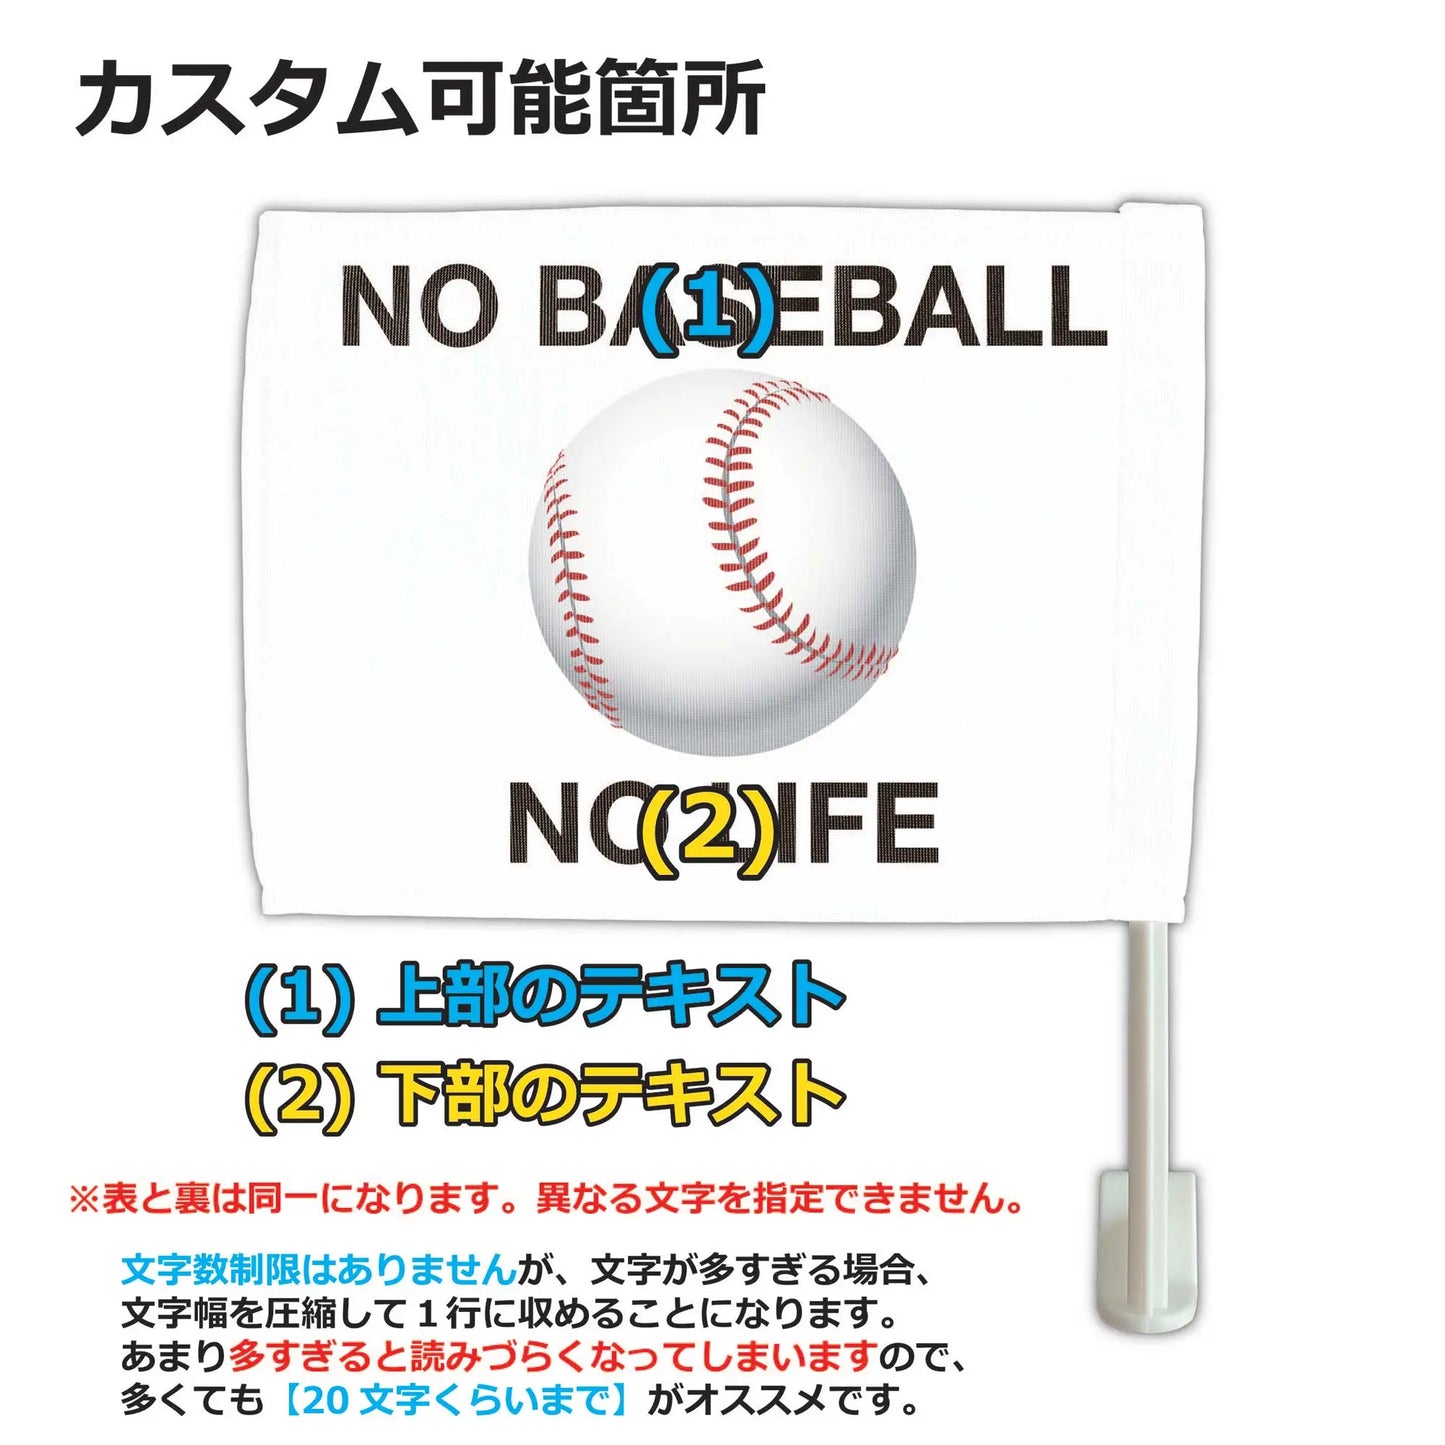 【カーフラッグ】BASEBALL/野球/自動車用オリジナルフラッグ・旗 PL8HERO